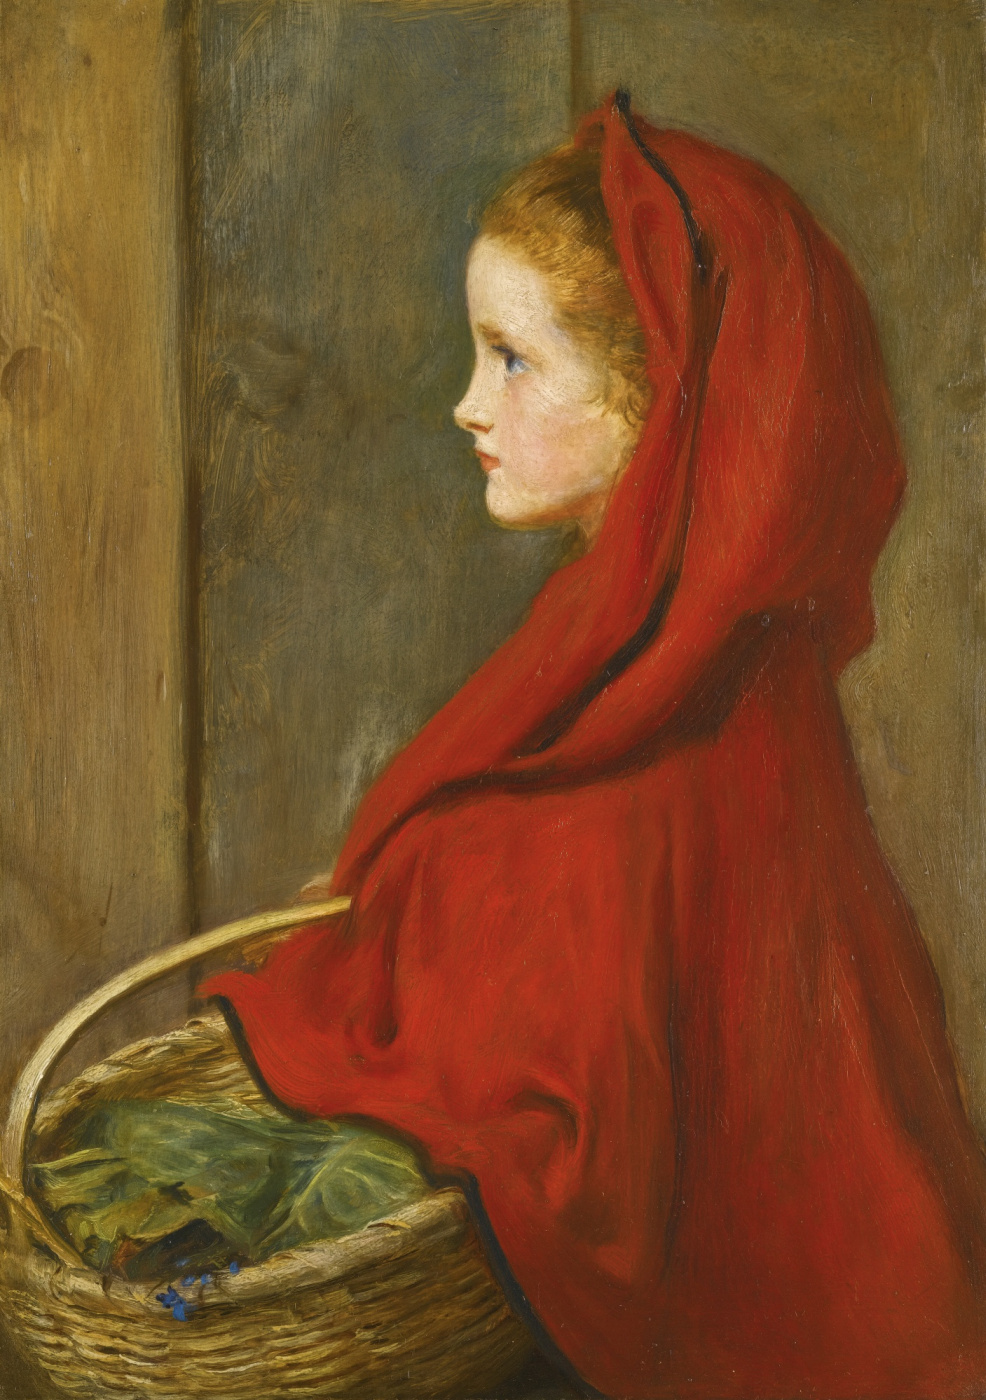 John Everett Millais. Red riding hood. A Portrait of Effie Millais, the artist's daughter